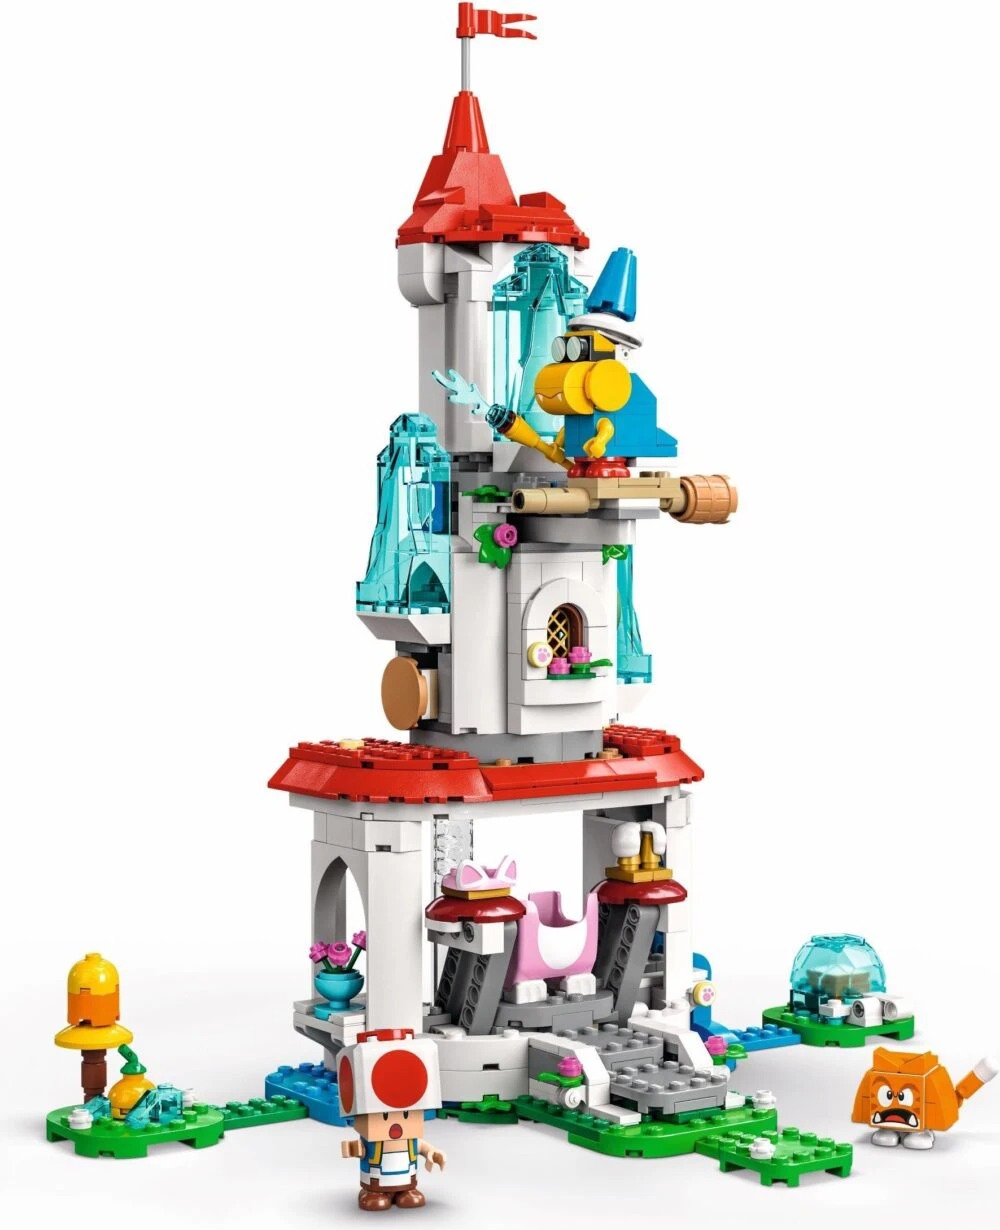 LEGO Super Mario Bros: La Princesa Peach, su castillo y más personajes llegan el 1 de agosto 9